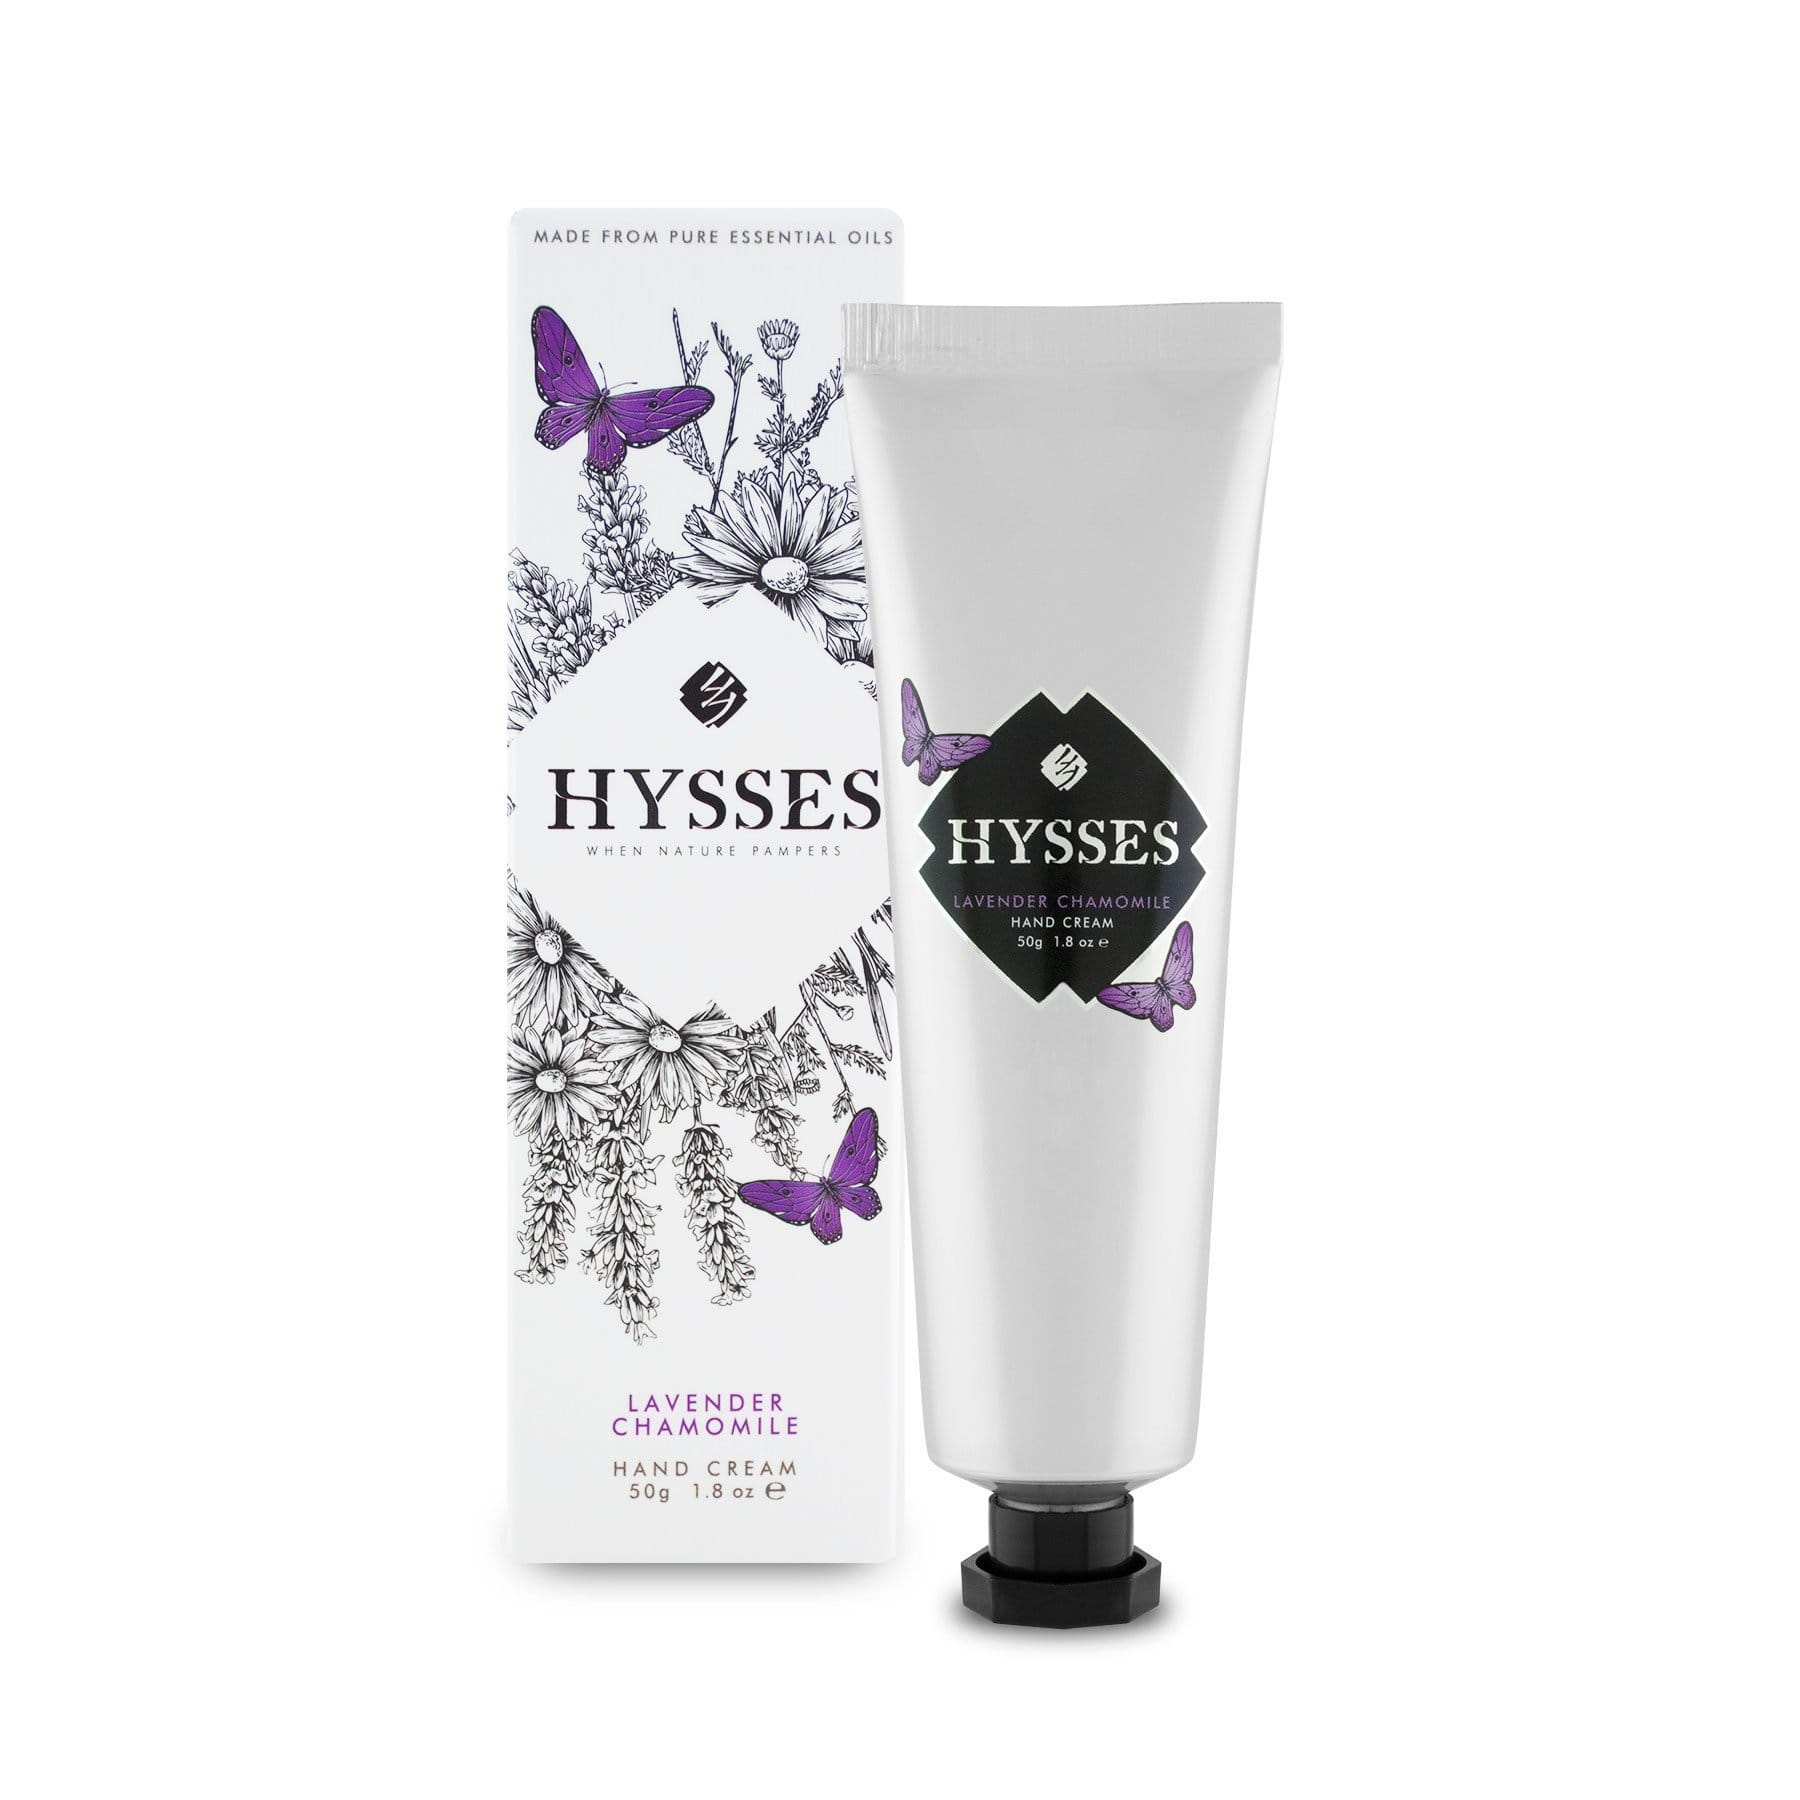 Hysses Body Care Hand Cream Lavender Chamomile